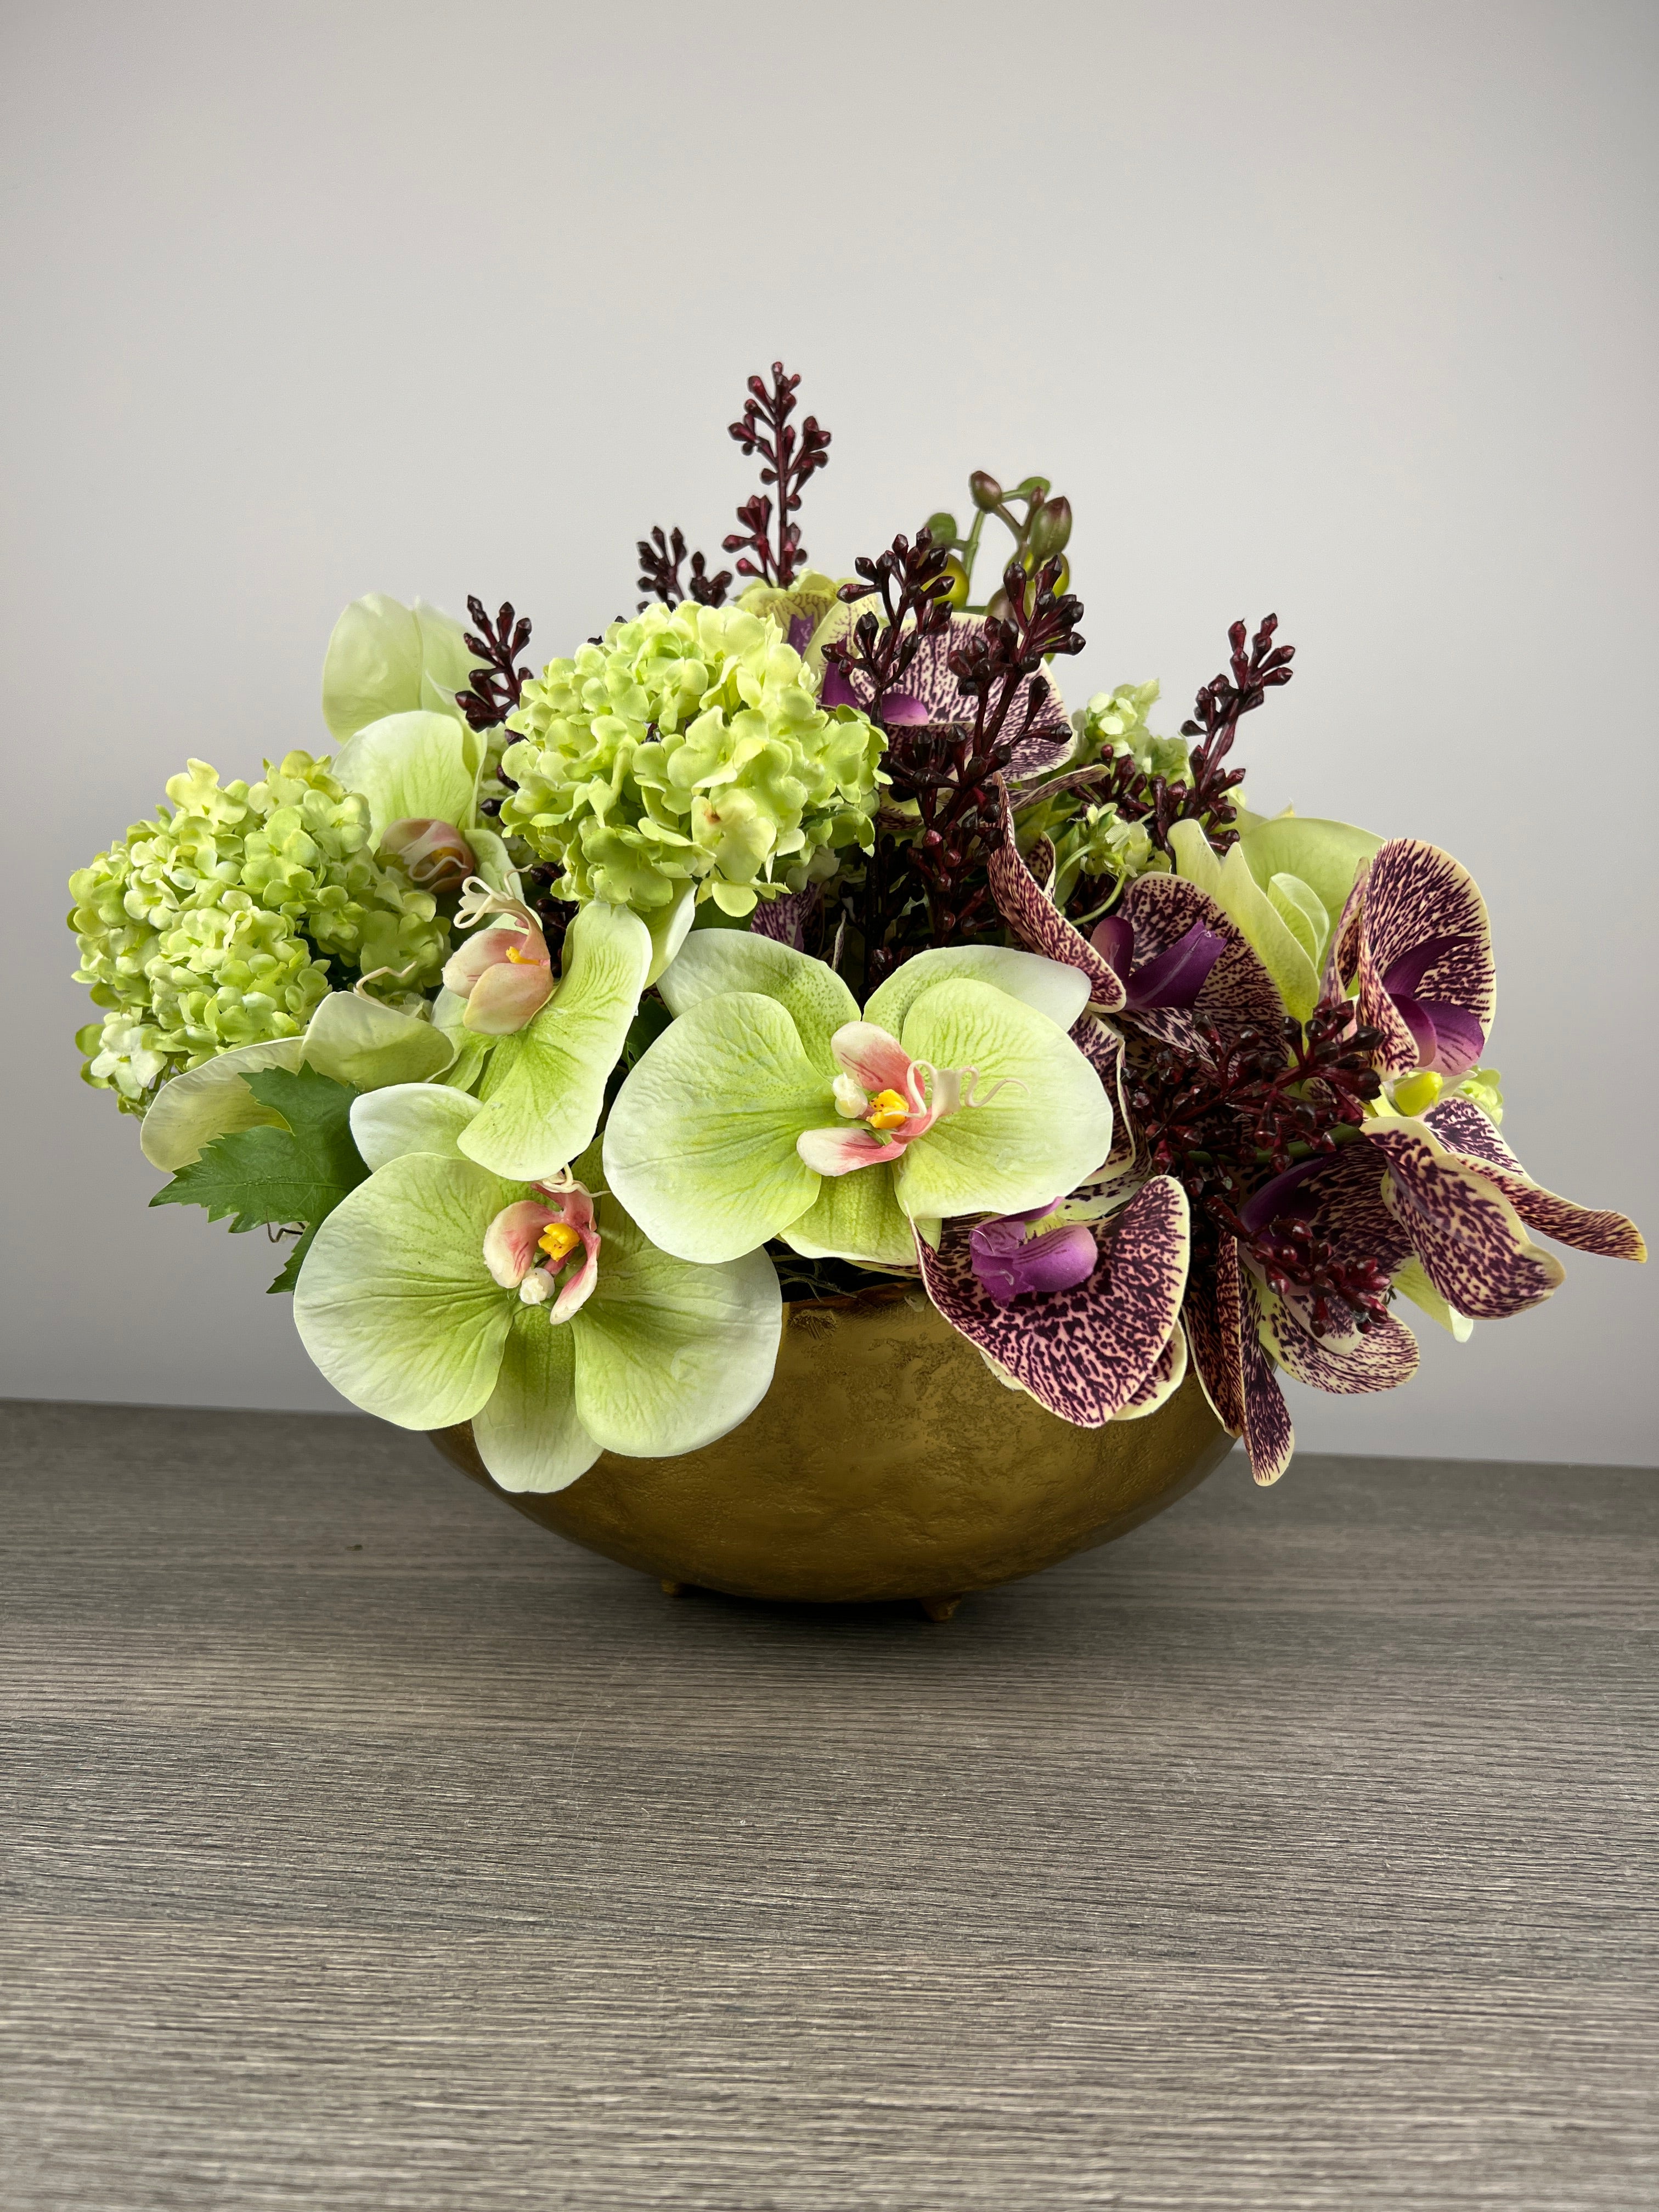 Luxurious artificial flower arrangement, luxurious decor, special centerpiece, green and purple orchids floral arrangement, artificial flowers